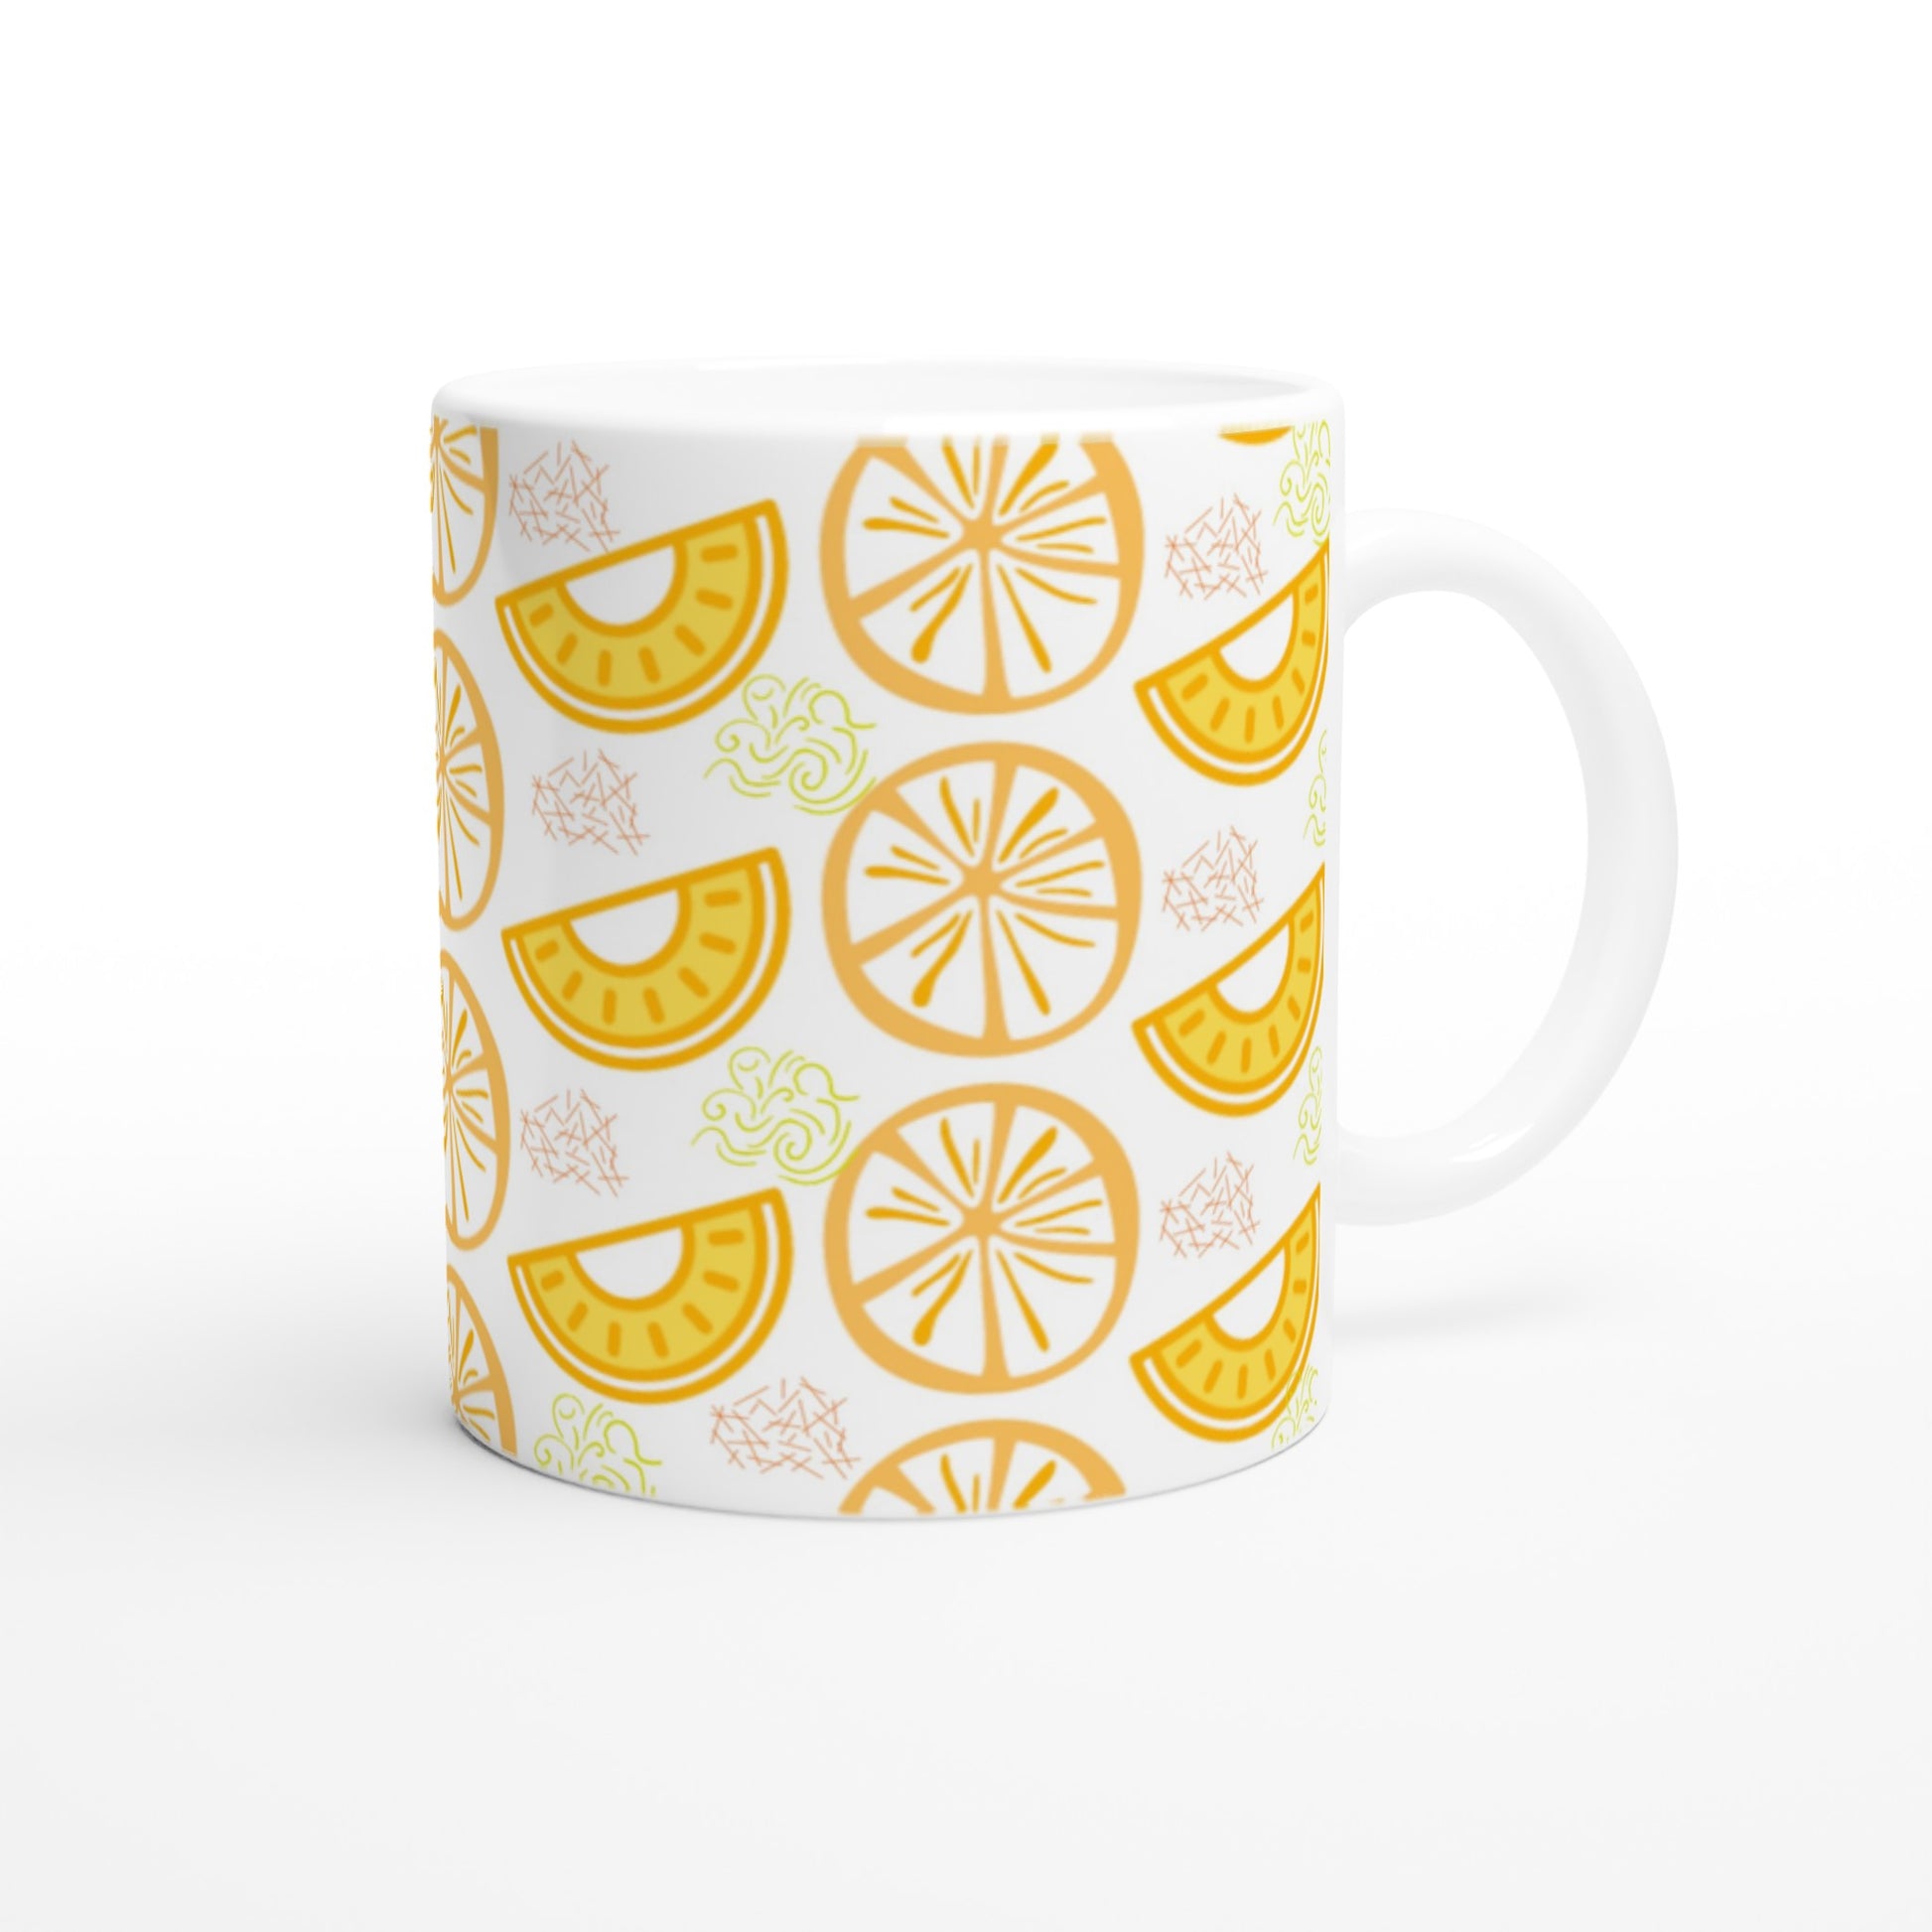 Bonita taza de cerámica con diseños de naranjas